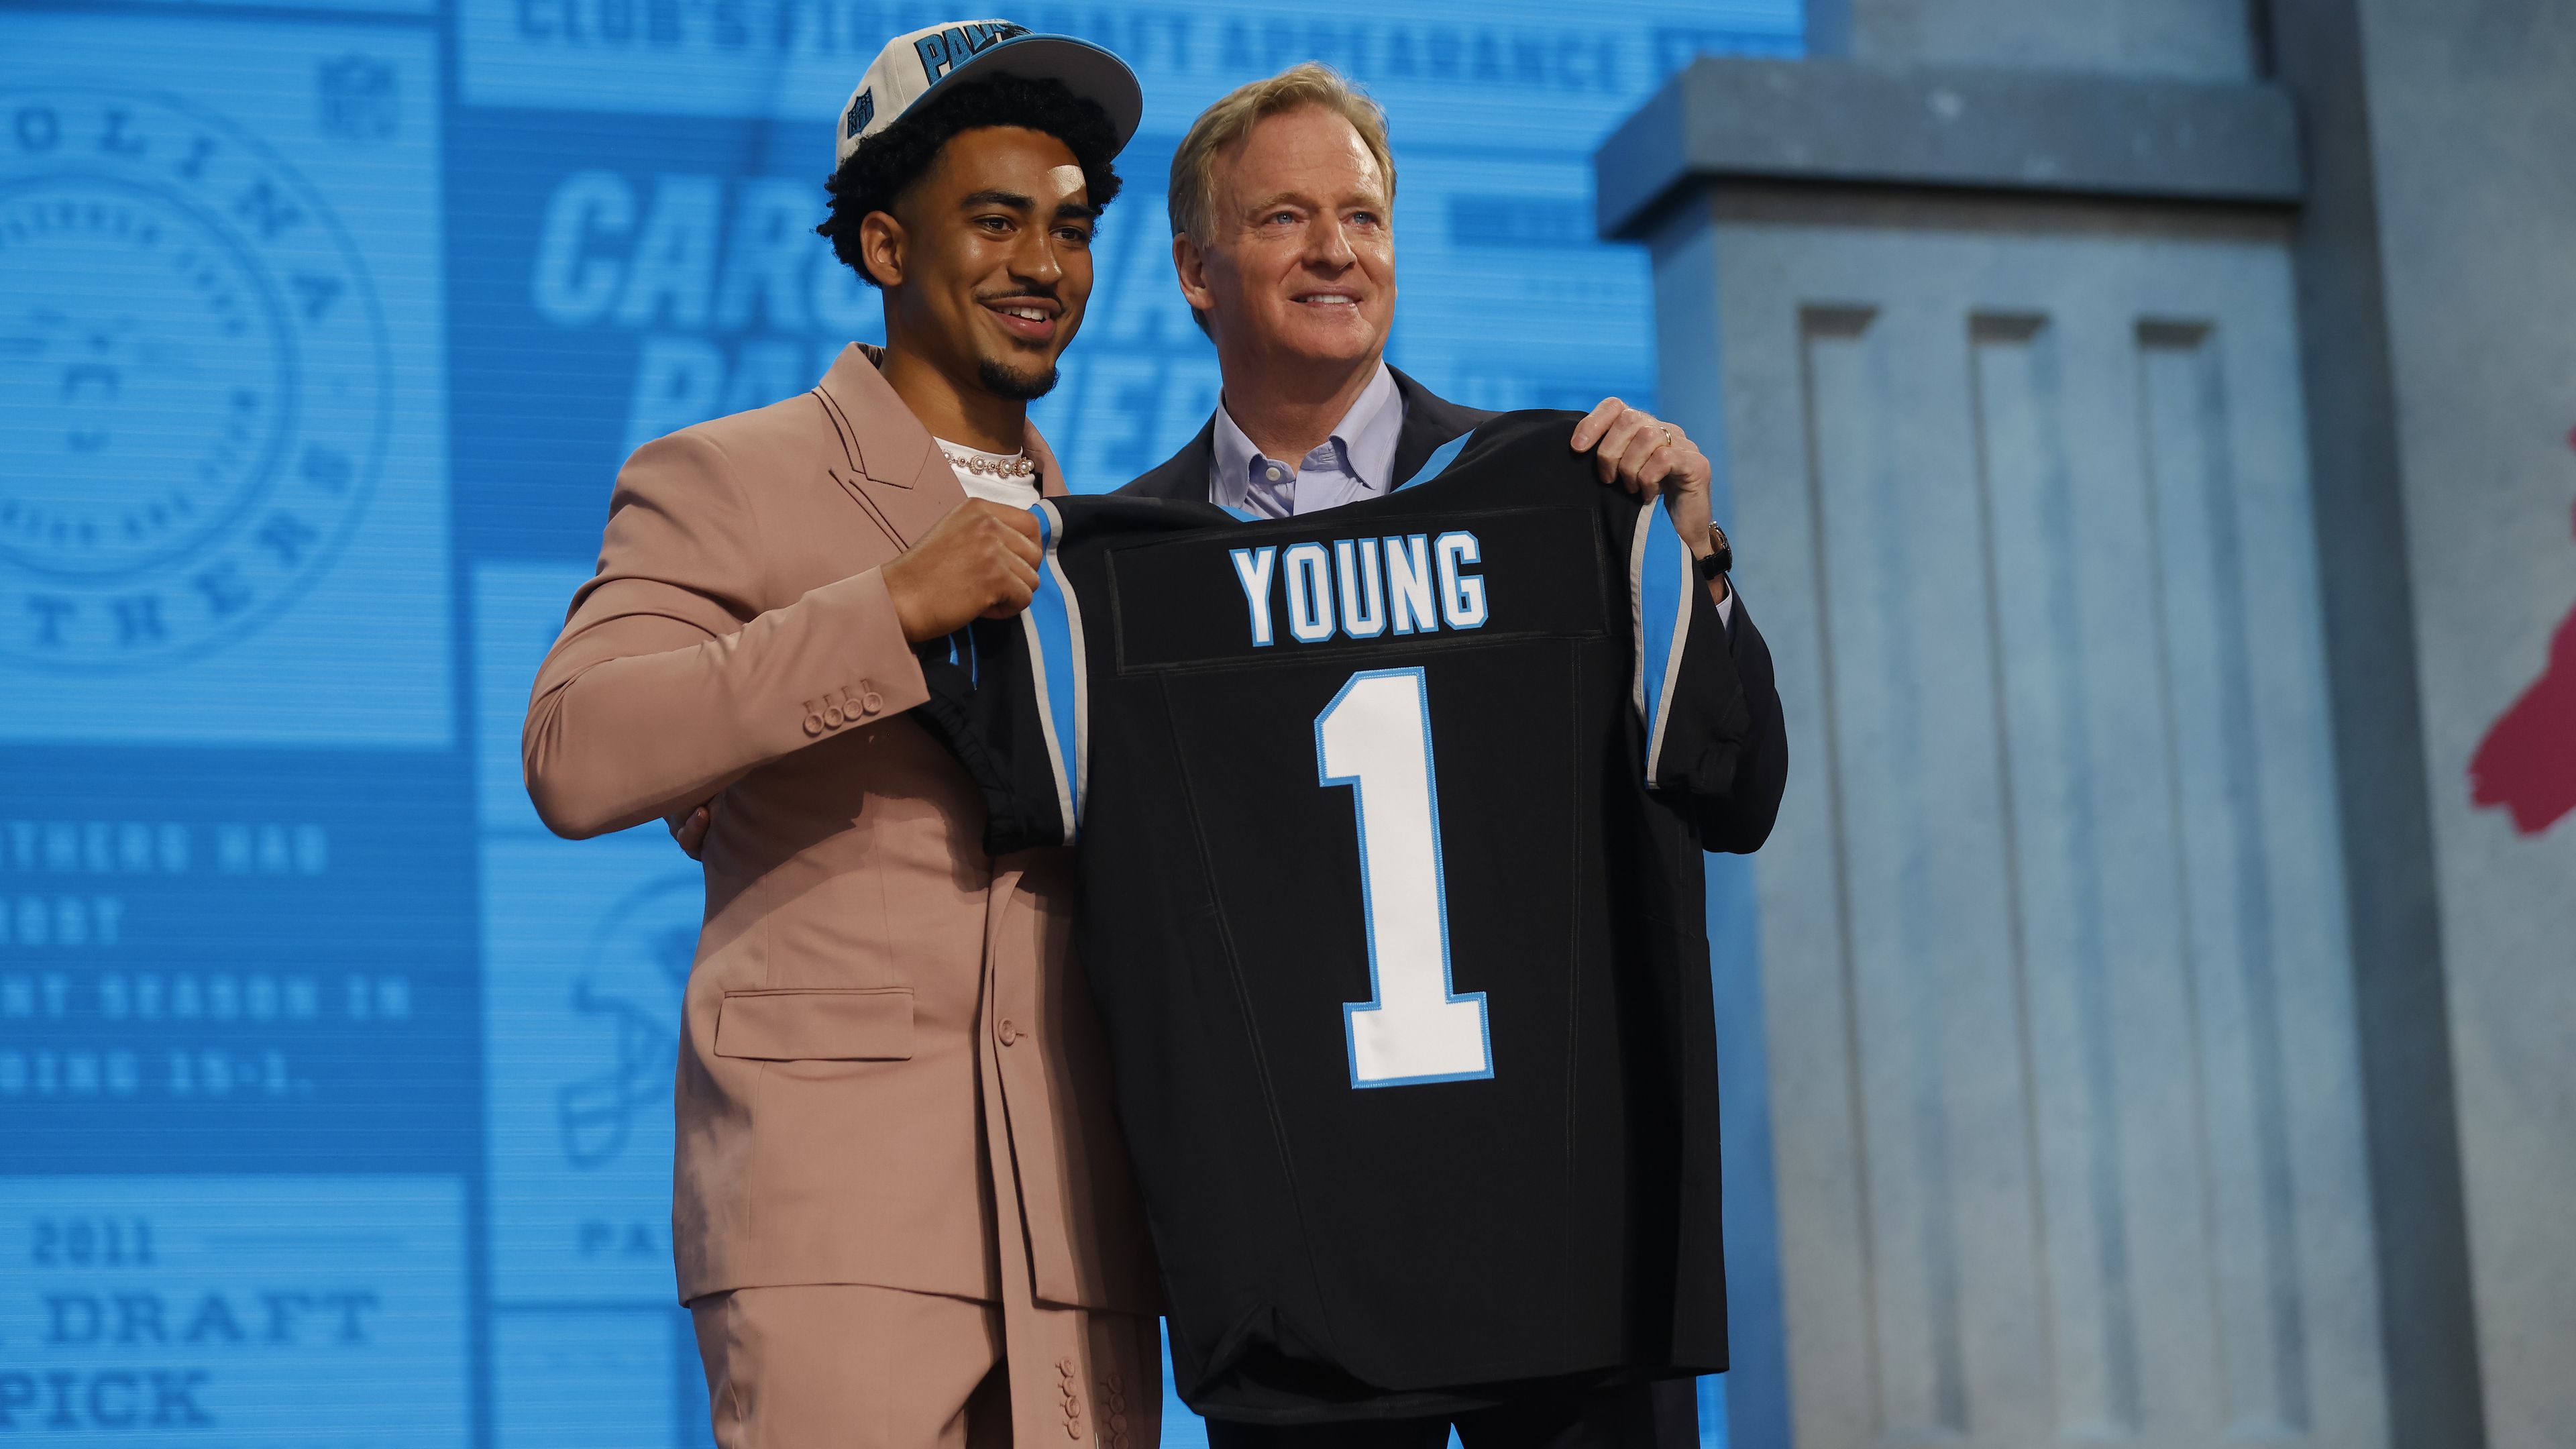 Az Alabama irányítóját, Bryce Youngot választották elsőként a 2023-as NFL-drafton – videóval